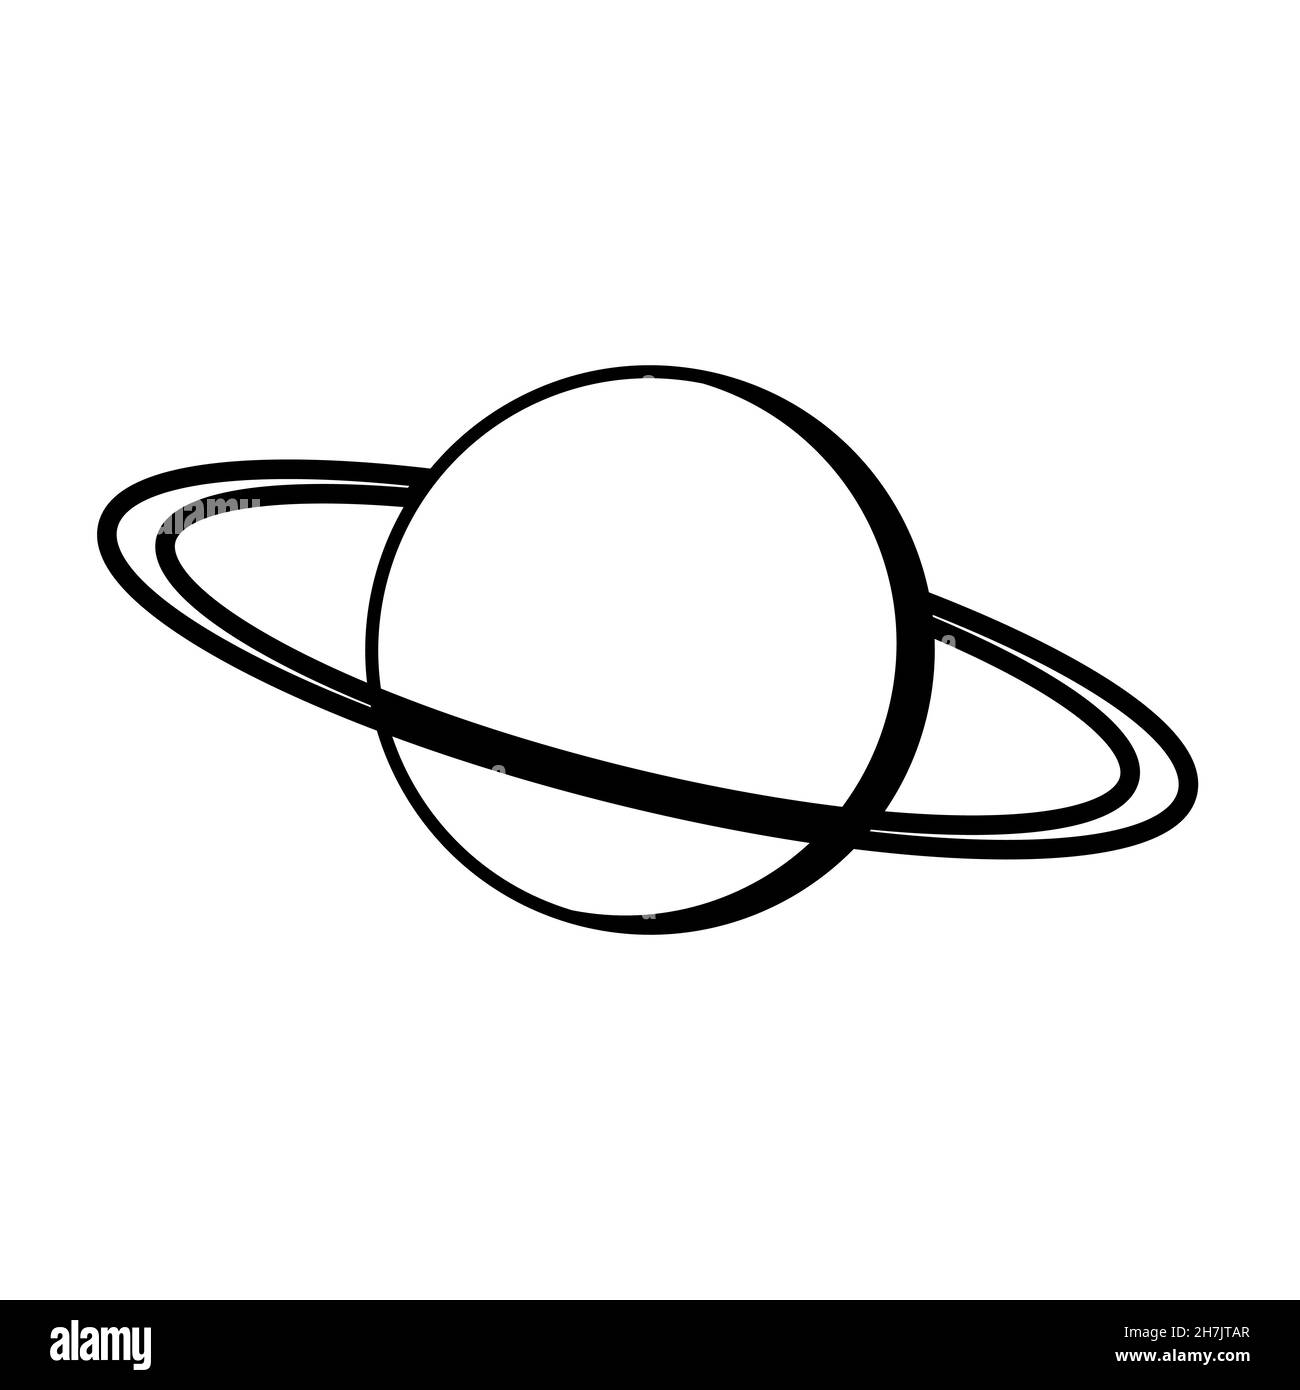 Planet saturn Umlaufbahn Himmelskörper Schlaganfall mit Ringen Stock Illustration Stock Vektor